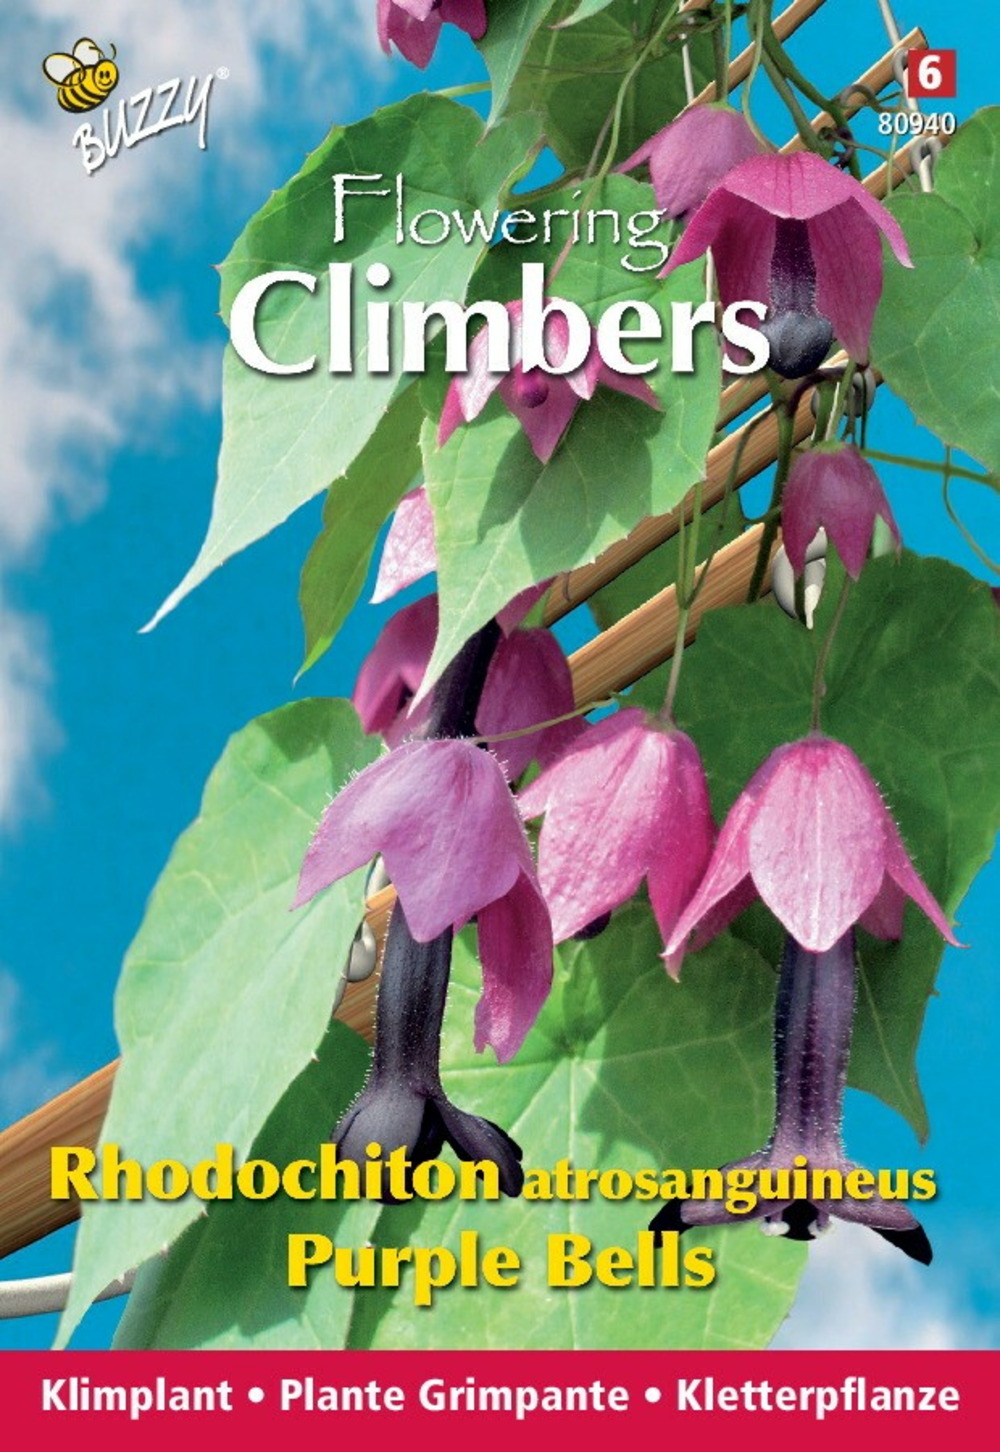 Buzzy climbing flowers, rhodochtion violets - ca. 10 graines (livraison gratuite)